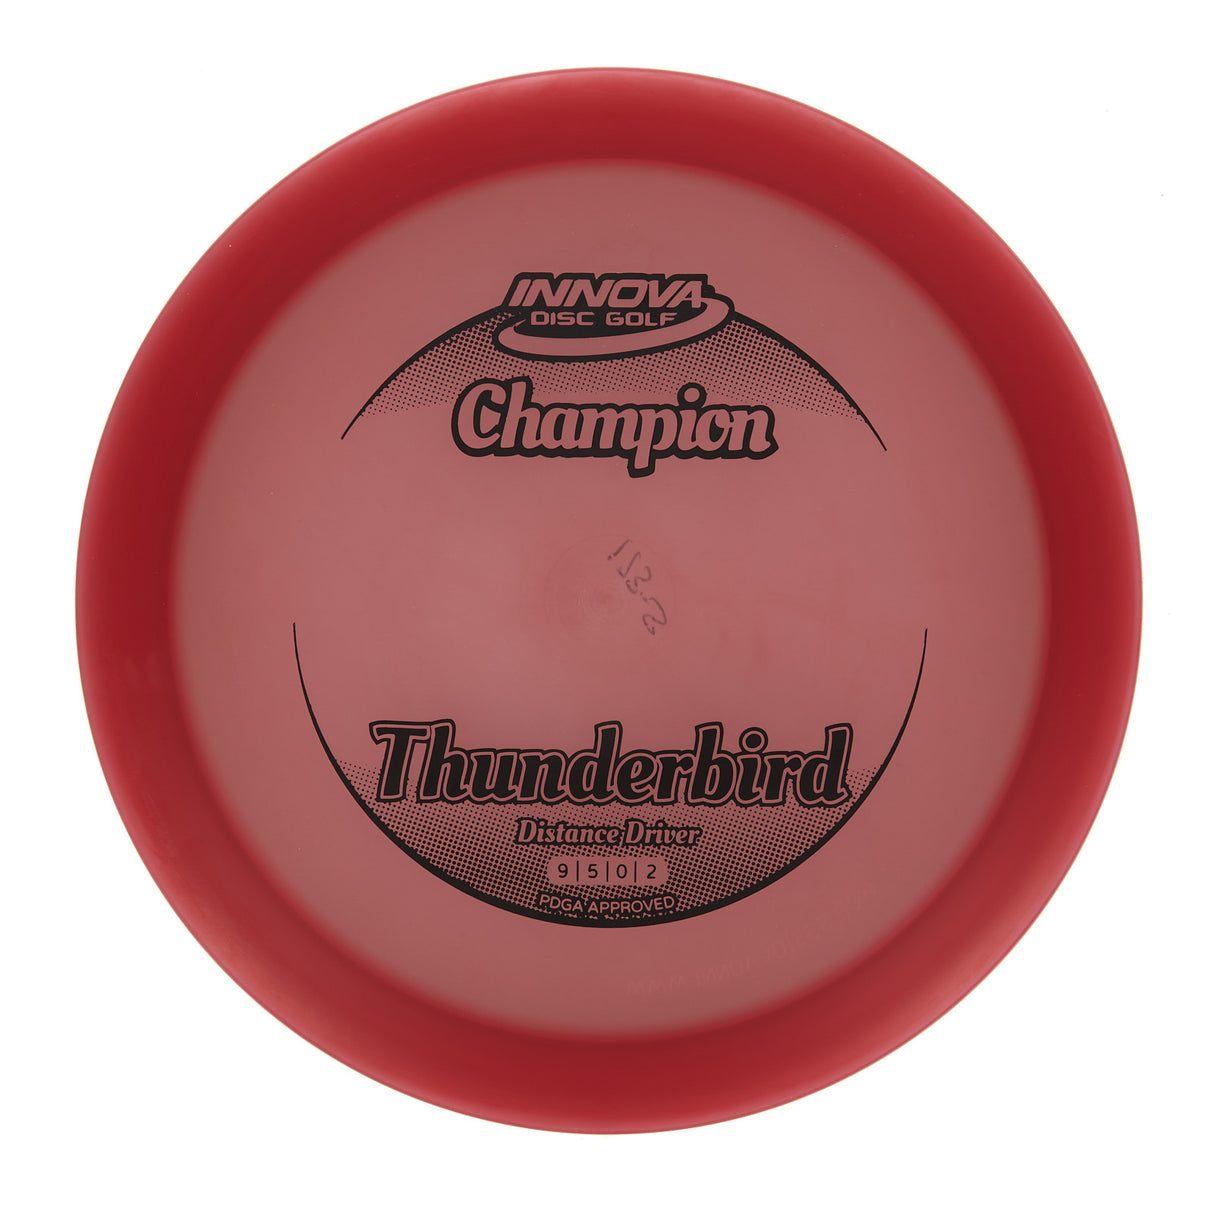 Innova Thunderbird - Champion 177g | Style 0001